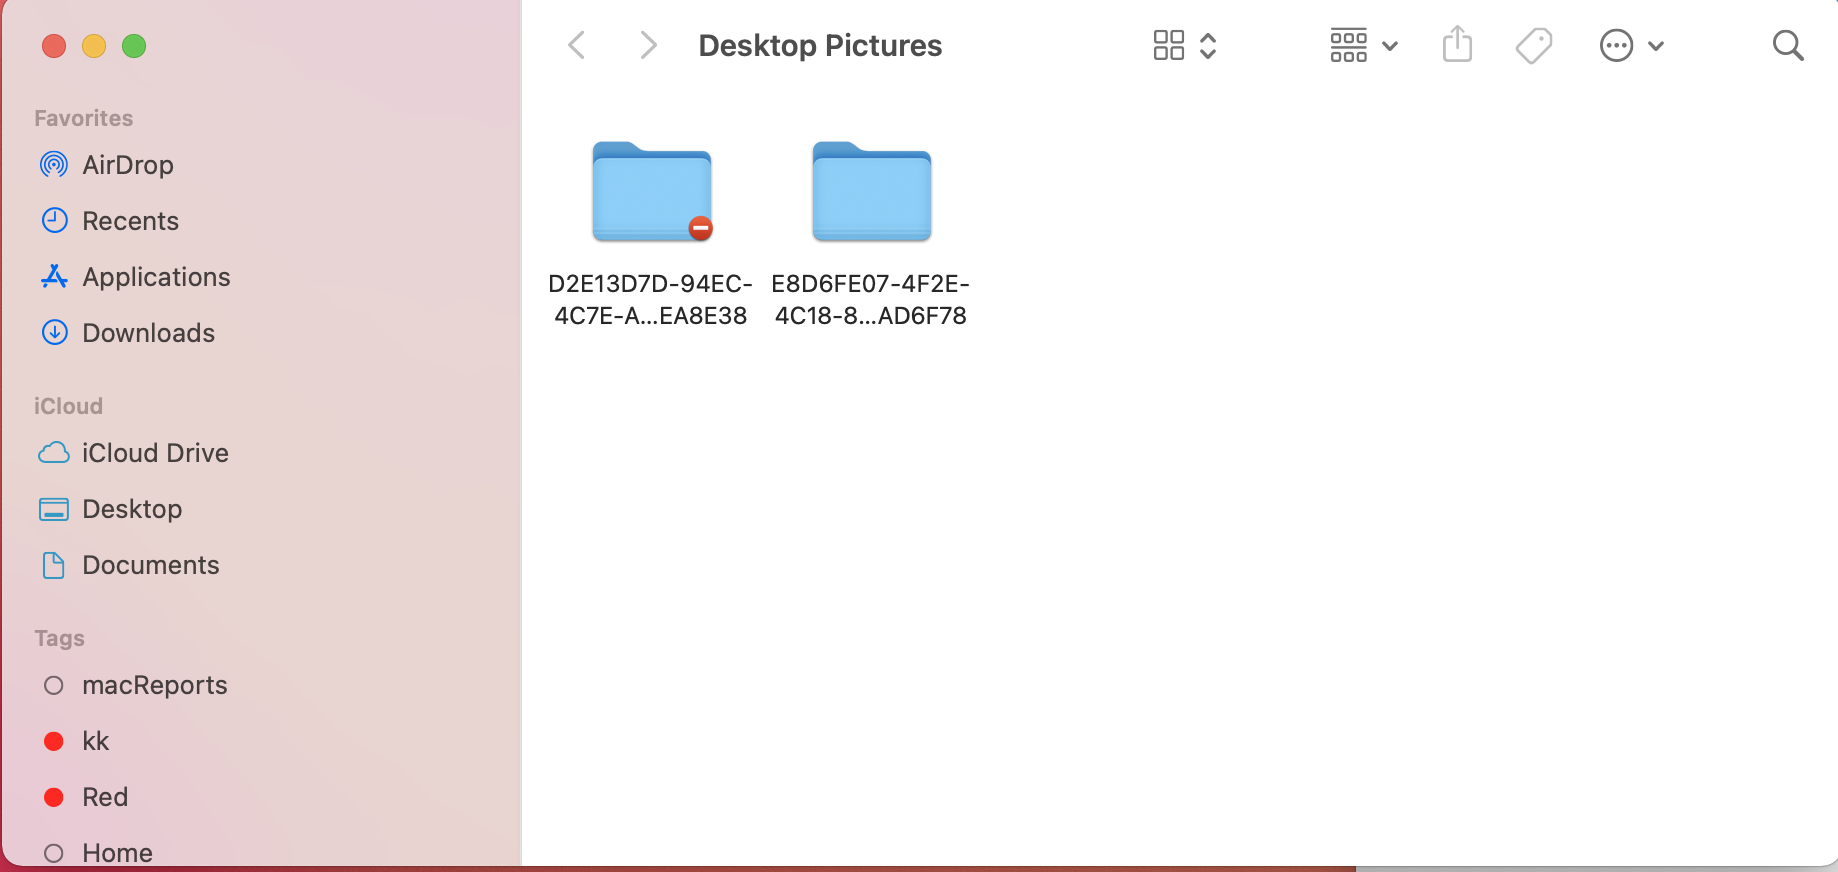 Desktop Pictures folder